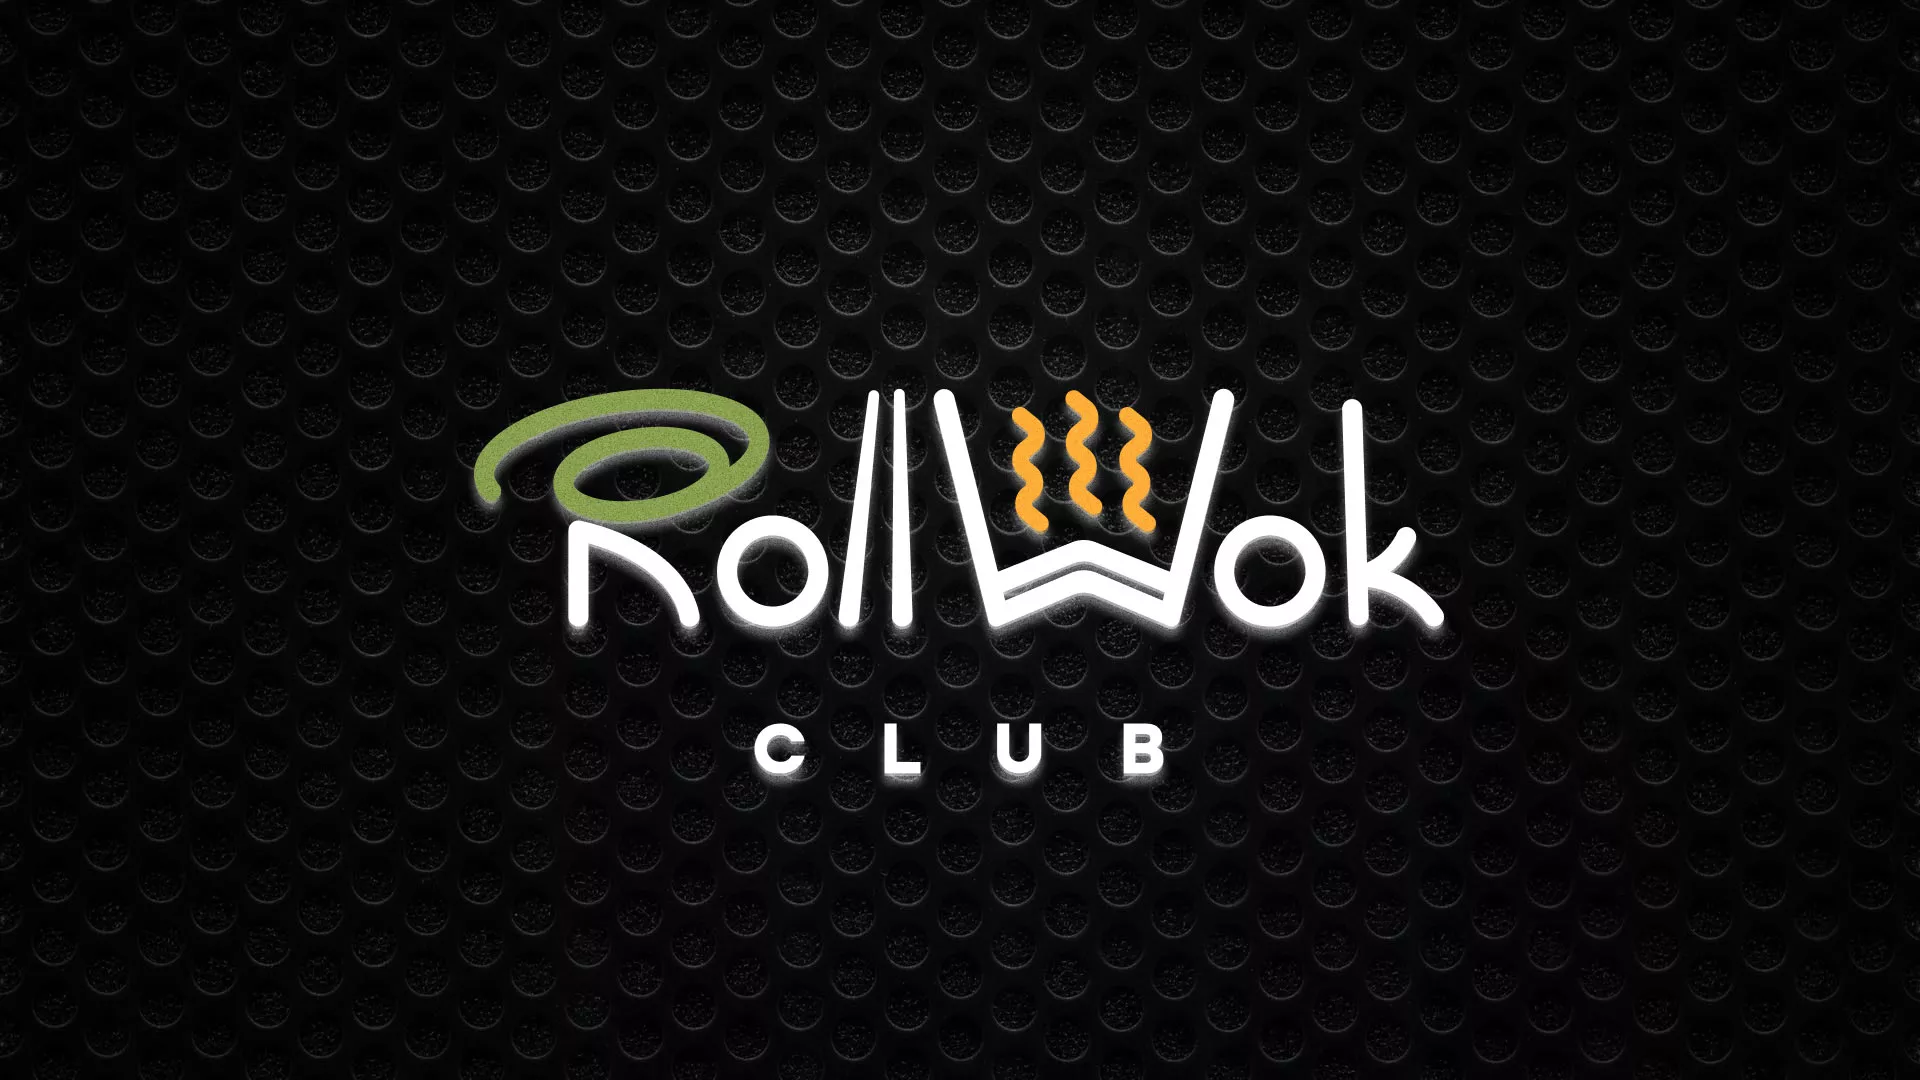 Брендирование торговых точек суши-бара «Roll Wok Club» в Кронштадте